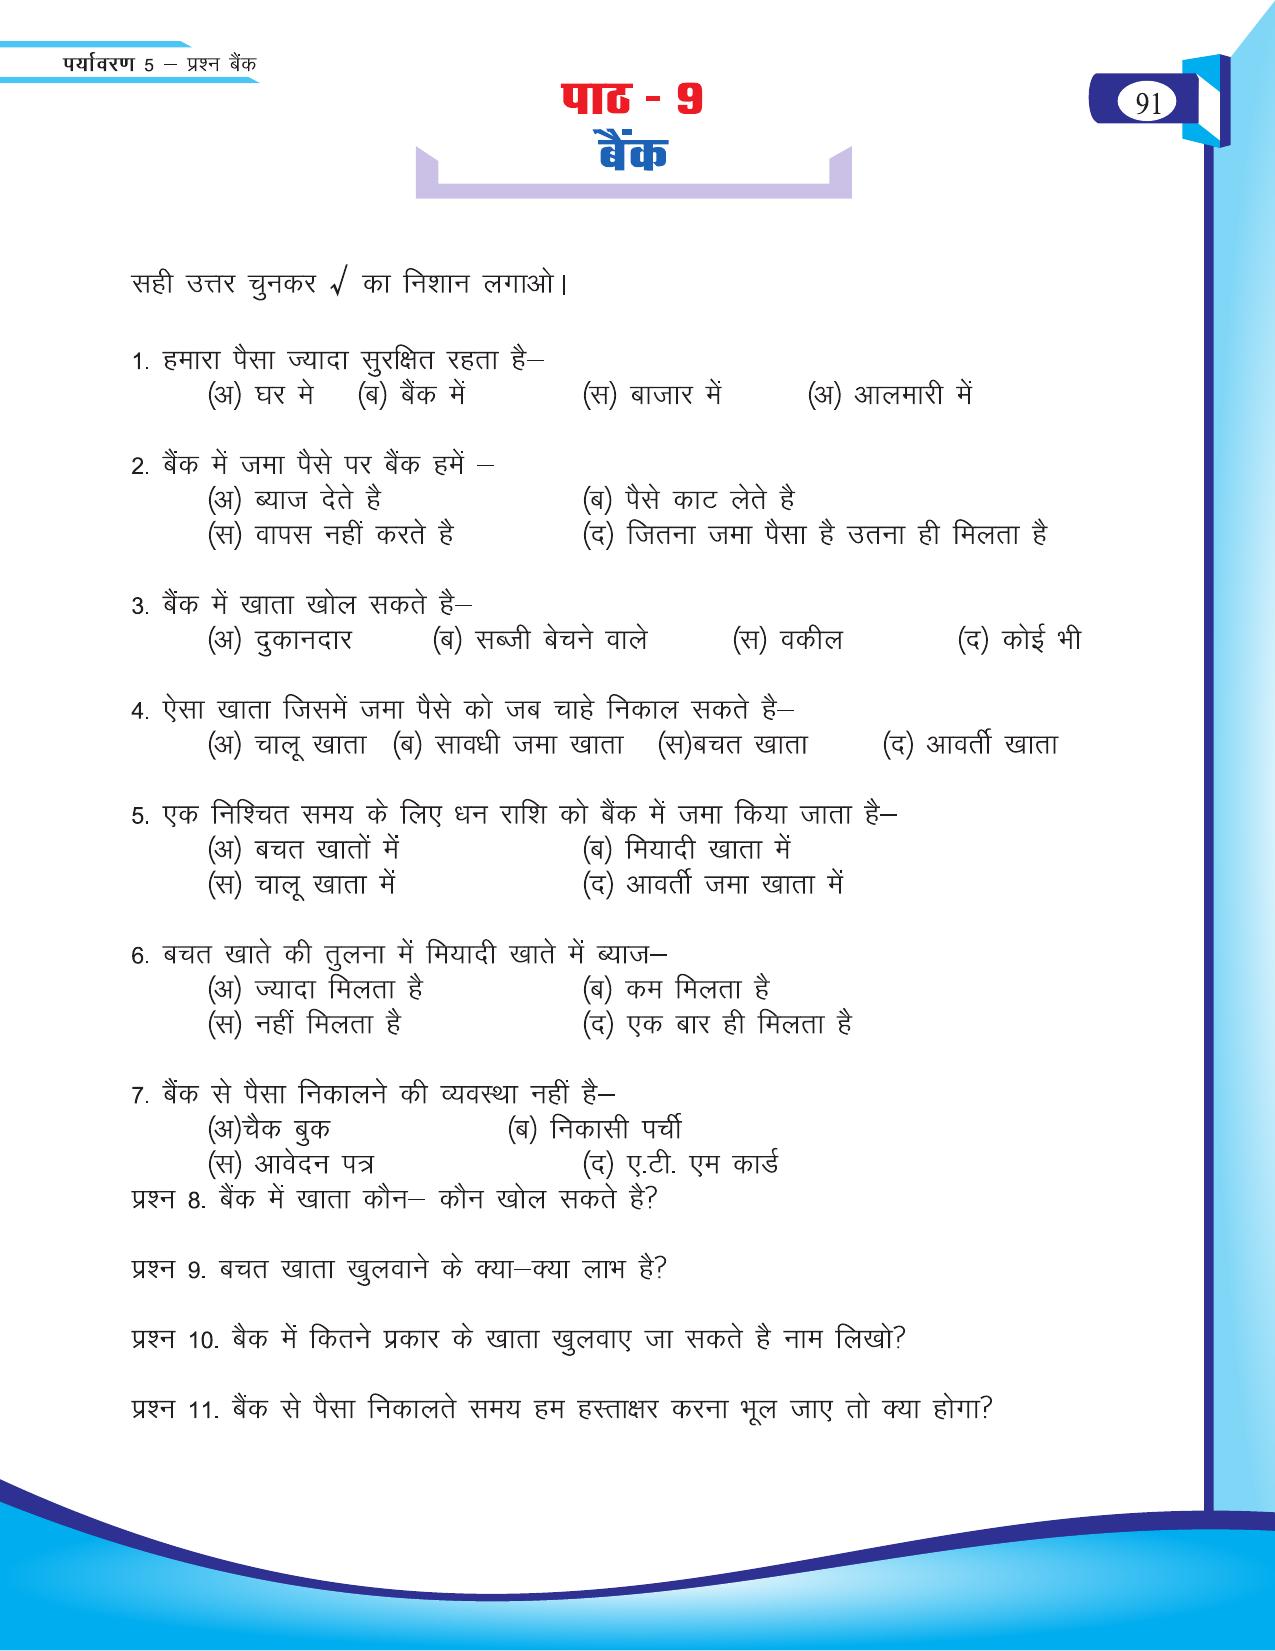 Chhattisgarh Board Class 5 EVS Question Bank 2015-16 - Page 17